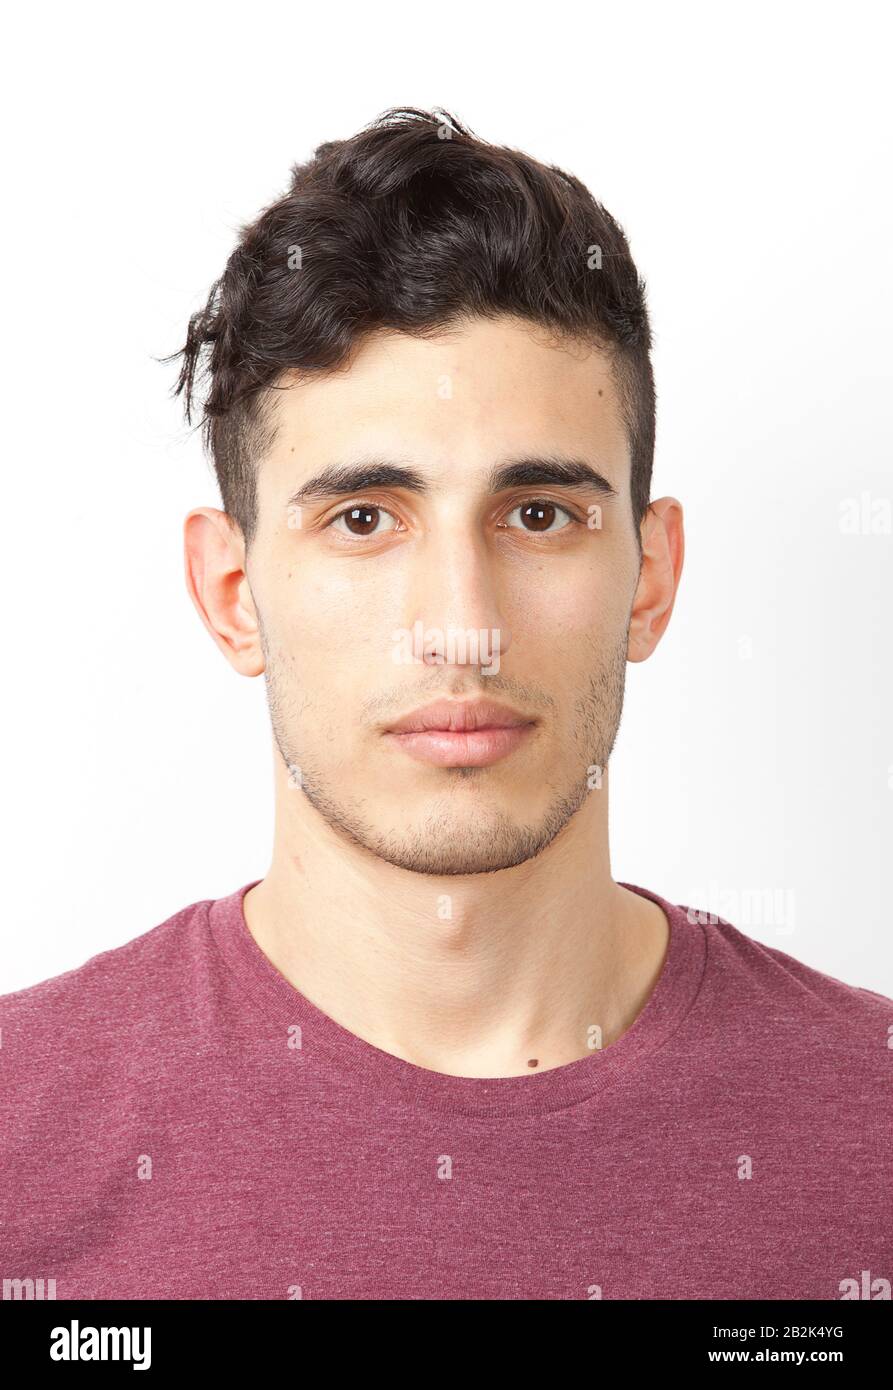 Portrait du jeune homme du Moyen-Orient sur fond blanc Banque D'Images